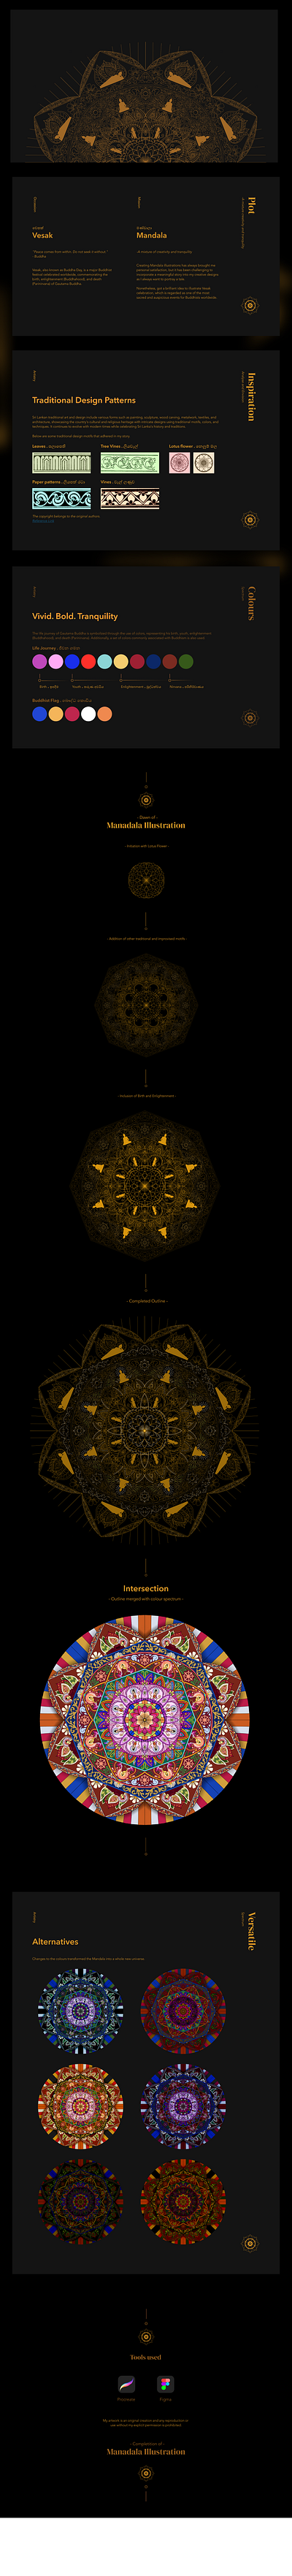 Wesak Mandala buddha buddhism colombo concept design illustration mandala may srilanka vesak wesak